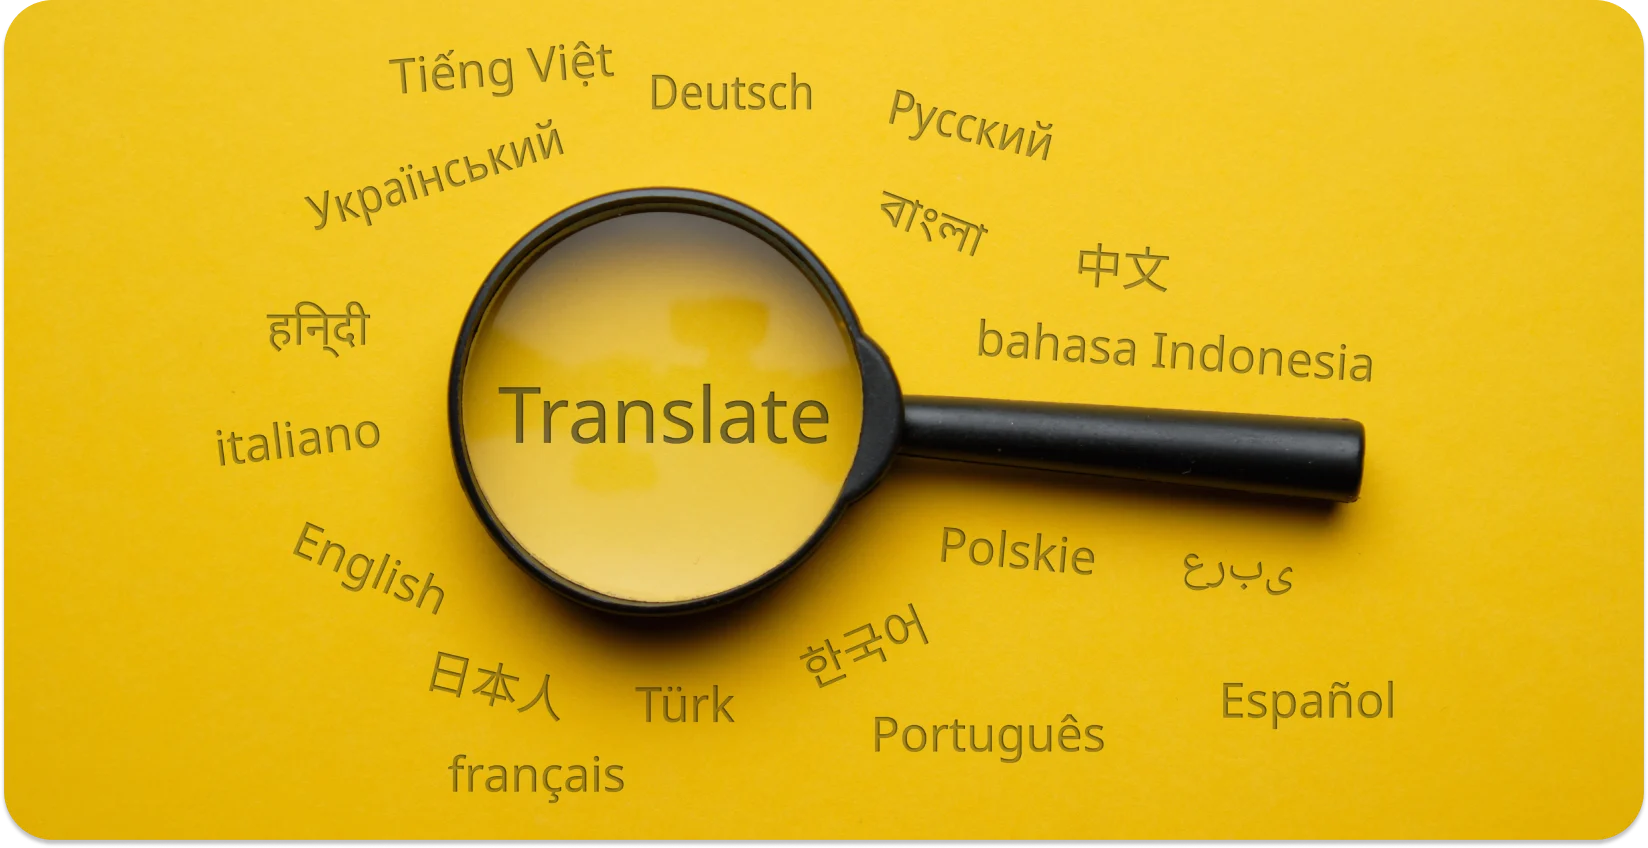 عدسة مكبرة تسلط الضوء على "ترجمة" وسط لغات مختلفة ، ترمز إلى التحويل اللغوي.